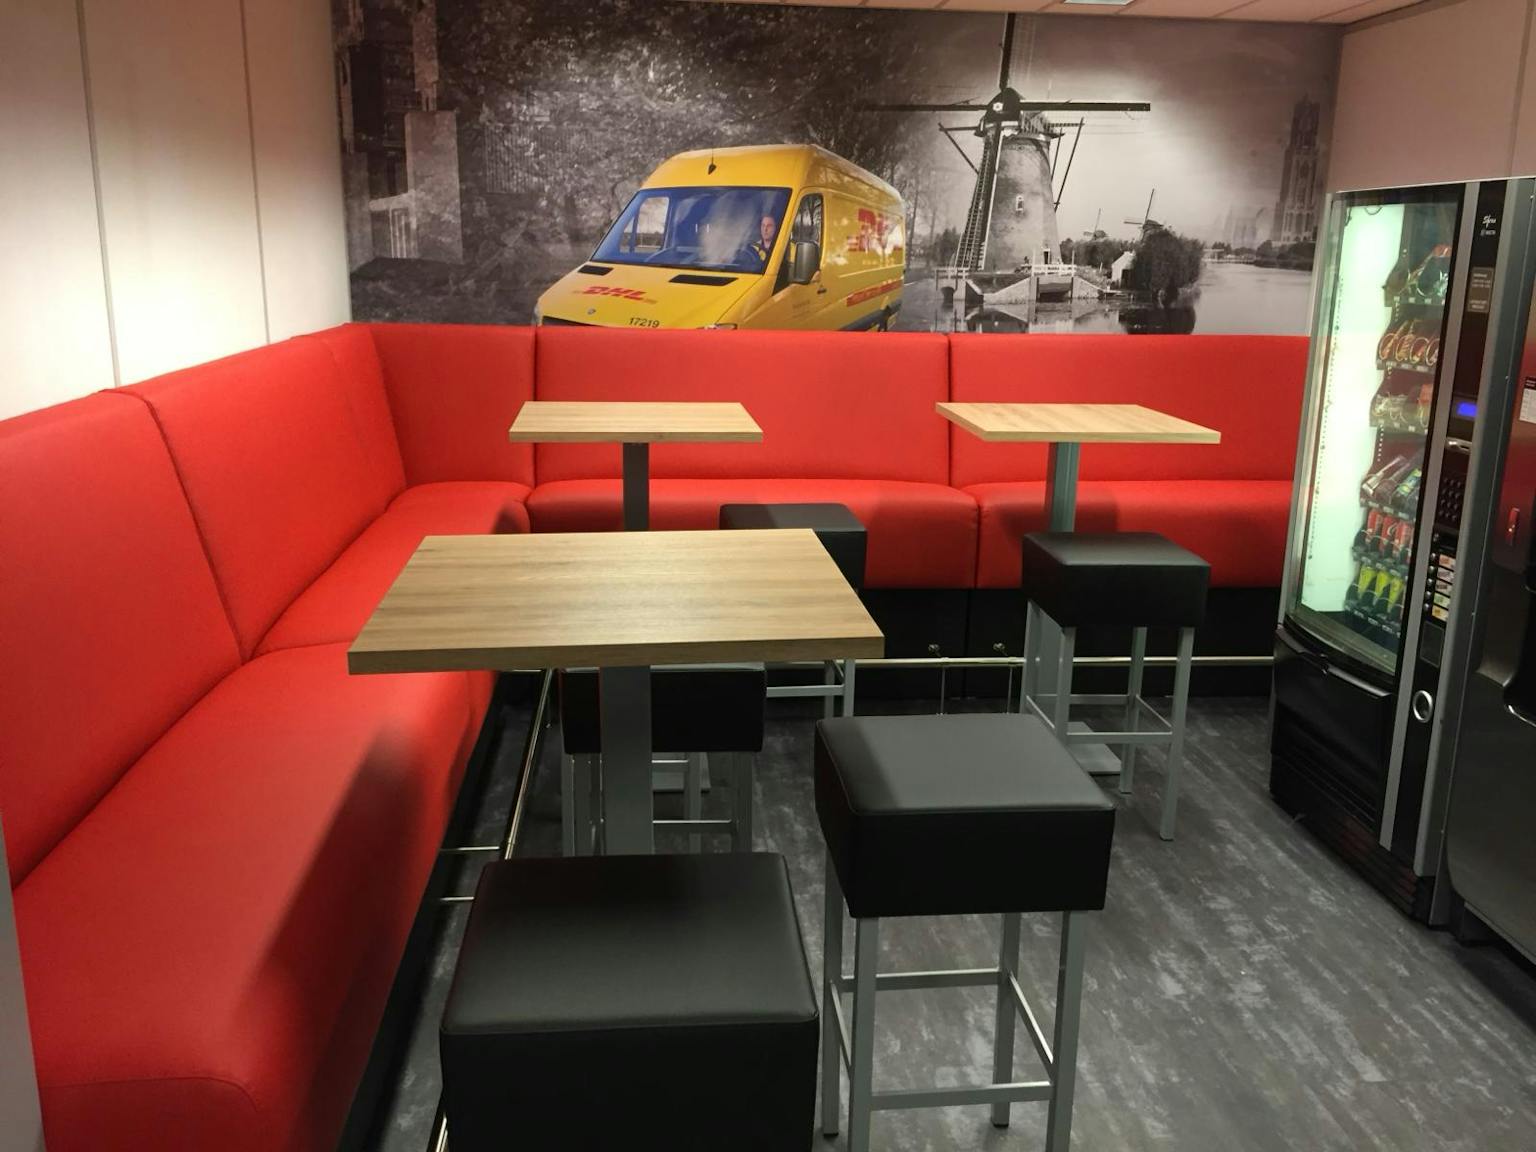 Koffiecorner met rode treinbanken die de hoek vullen. Voor de treinbanken staan bartafels met lichteiken houten bladen en daarbij staan weer zwarte krukken. Op de muur is een visual geplakt met een DHL-bus.